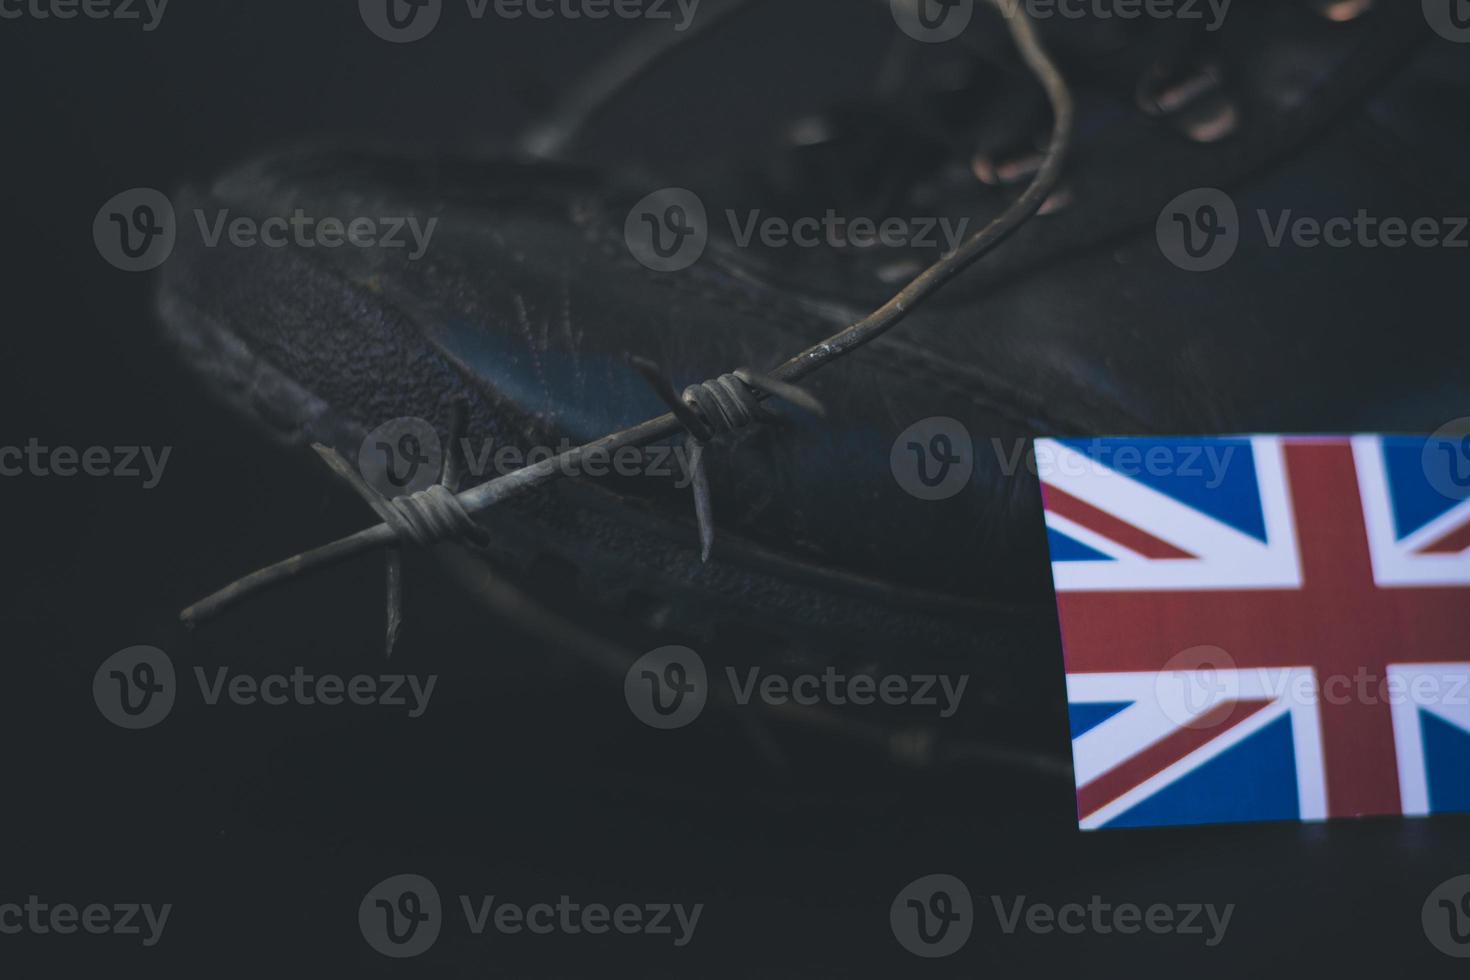 armee des vereinigten königreichs, militärstiefel flagge vereinigtes königreich und stacheldraht, militärisches konzept foto